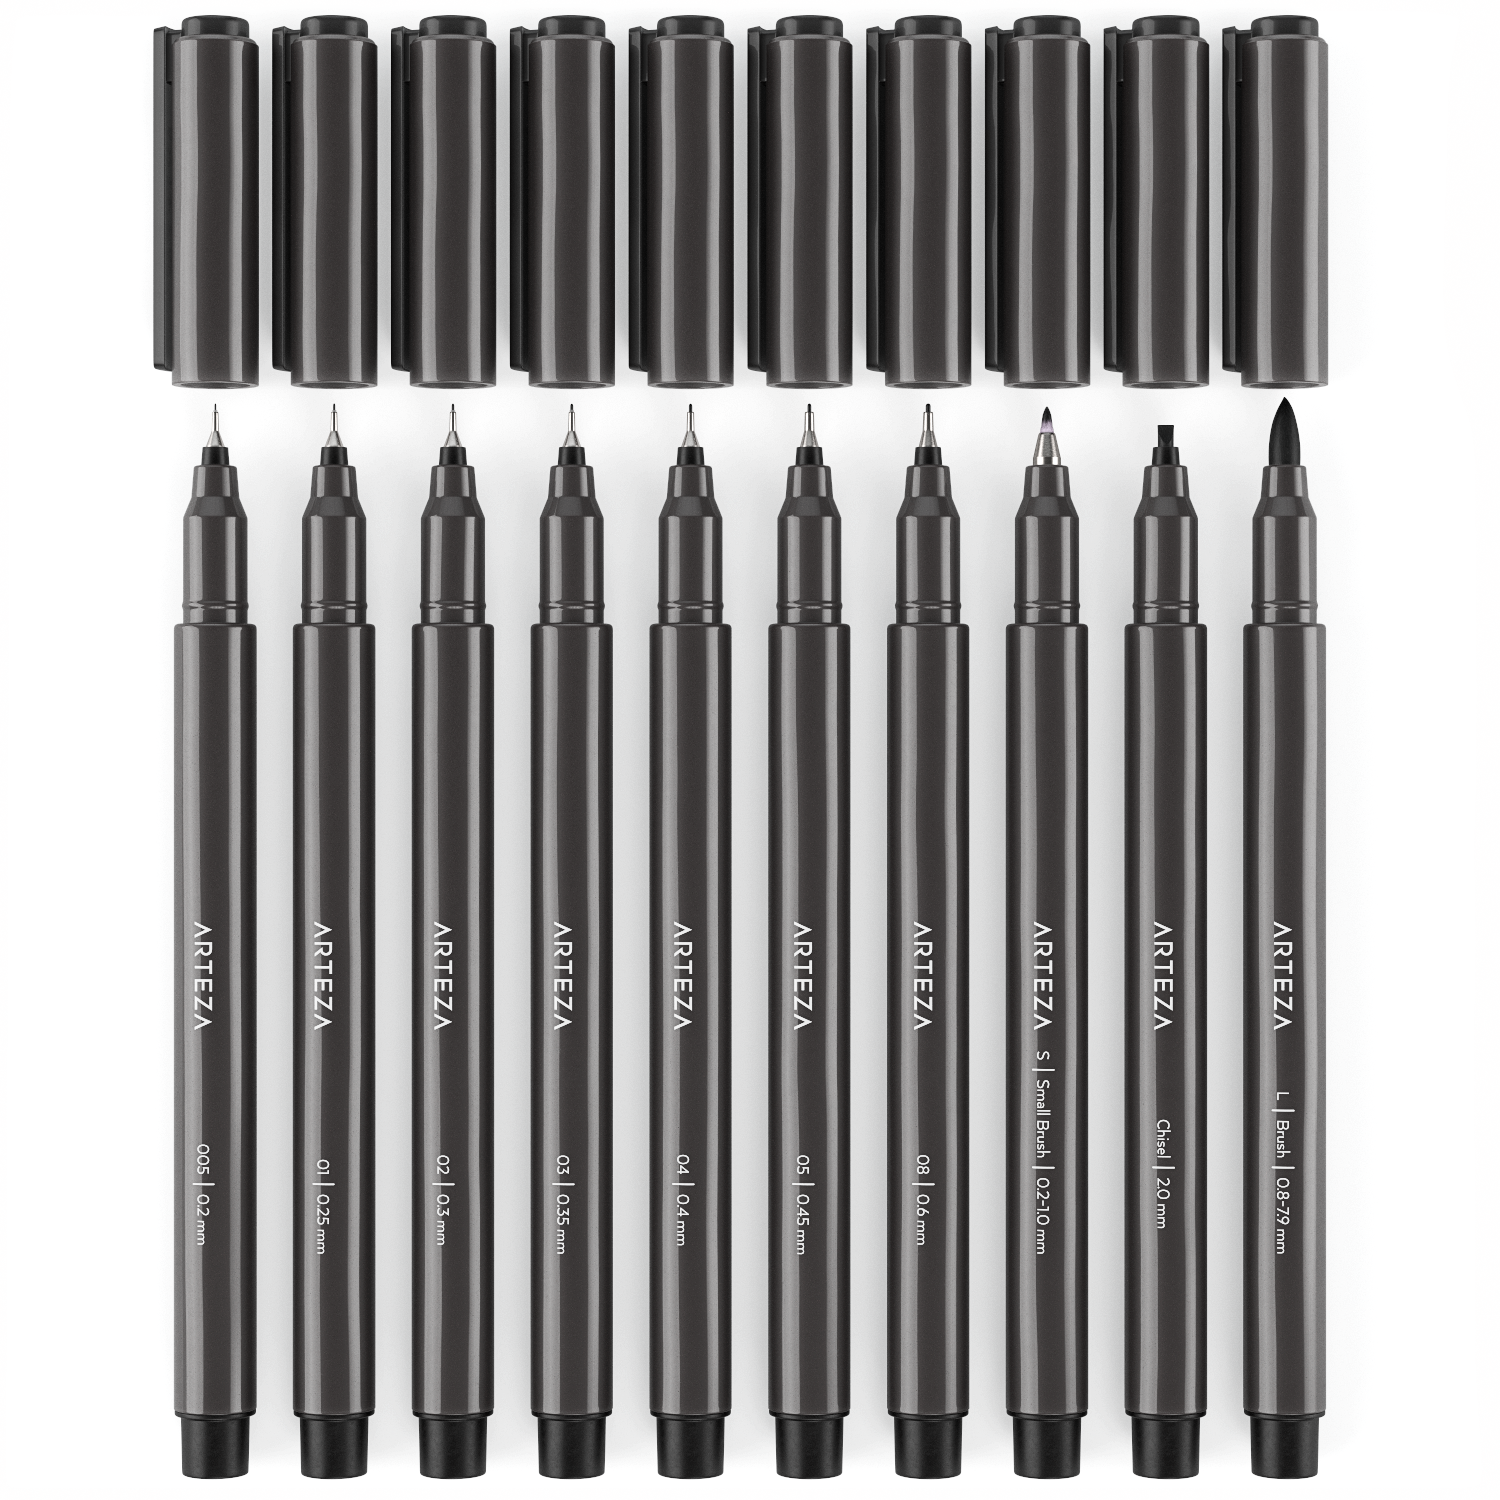 https://arteza.com/cdn/shop/products/micron-pens-black-assorted-setof10_Mkos7lqp.png?v=1652895222&width=1946